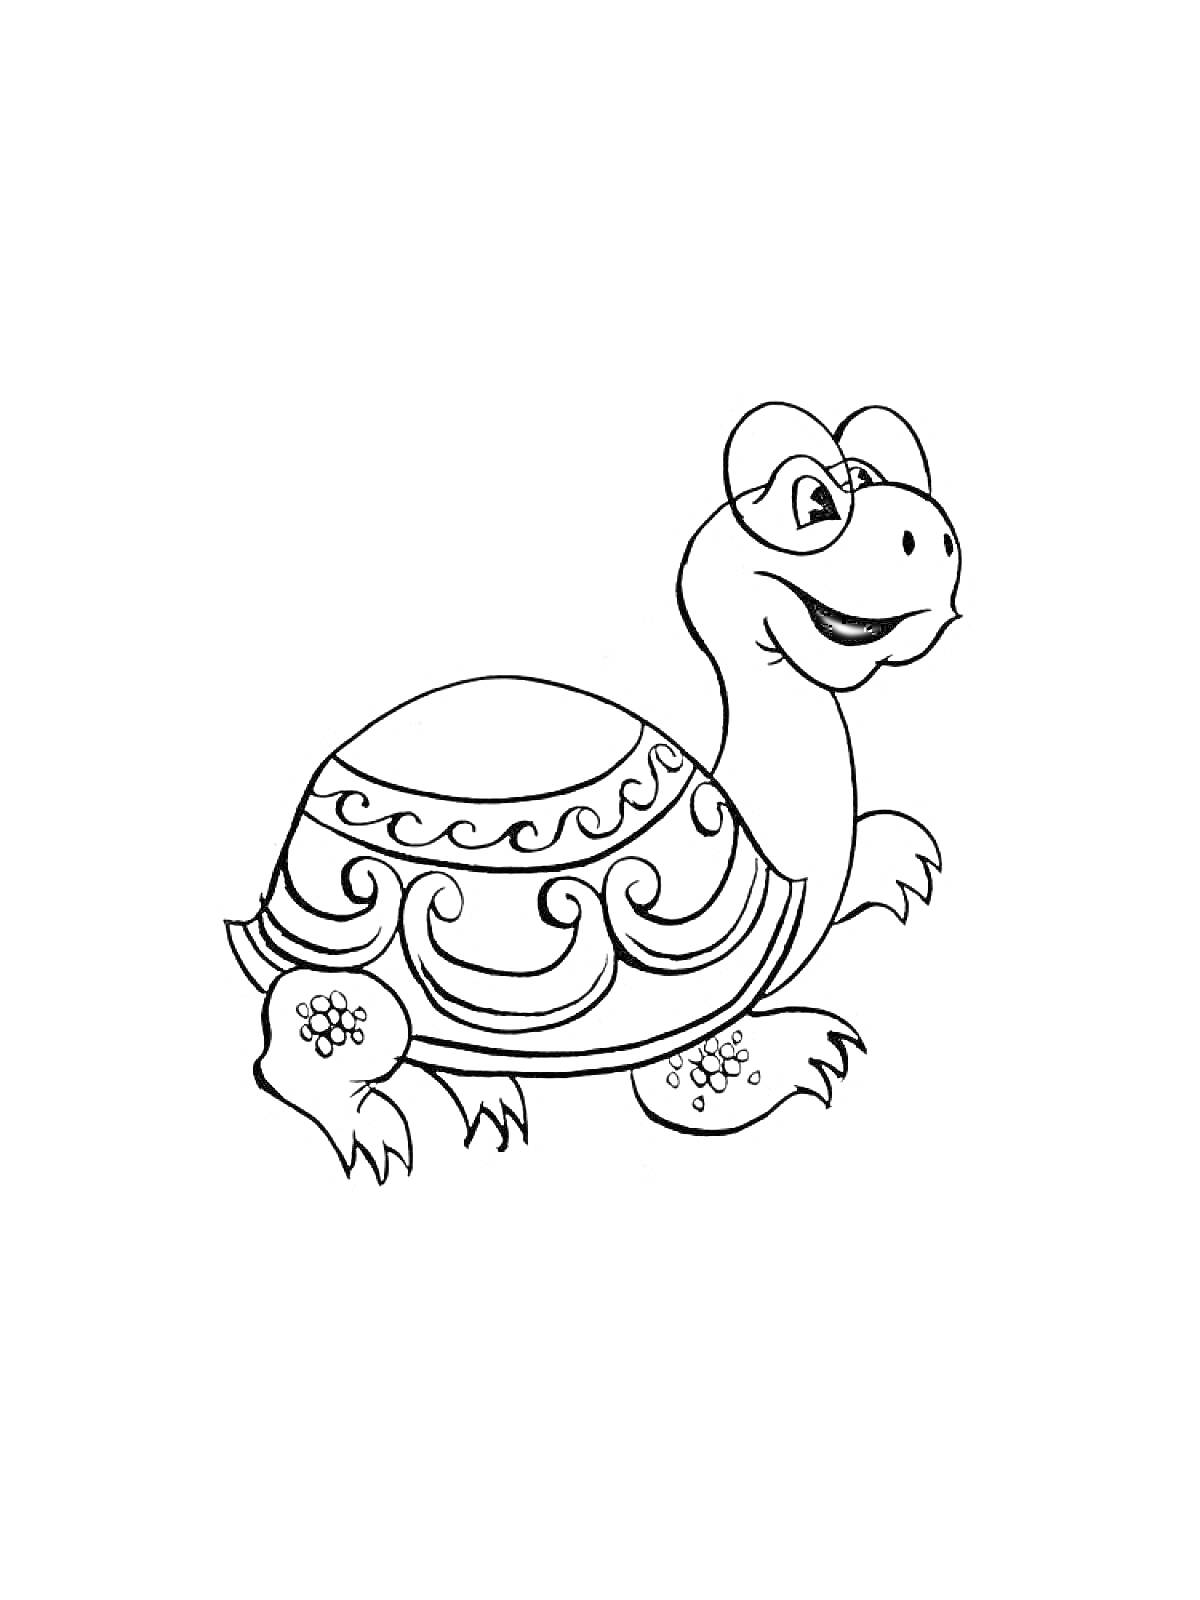 Раскраска Черепаха с узорчатым панцирем